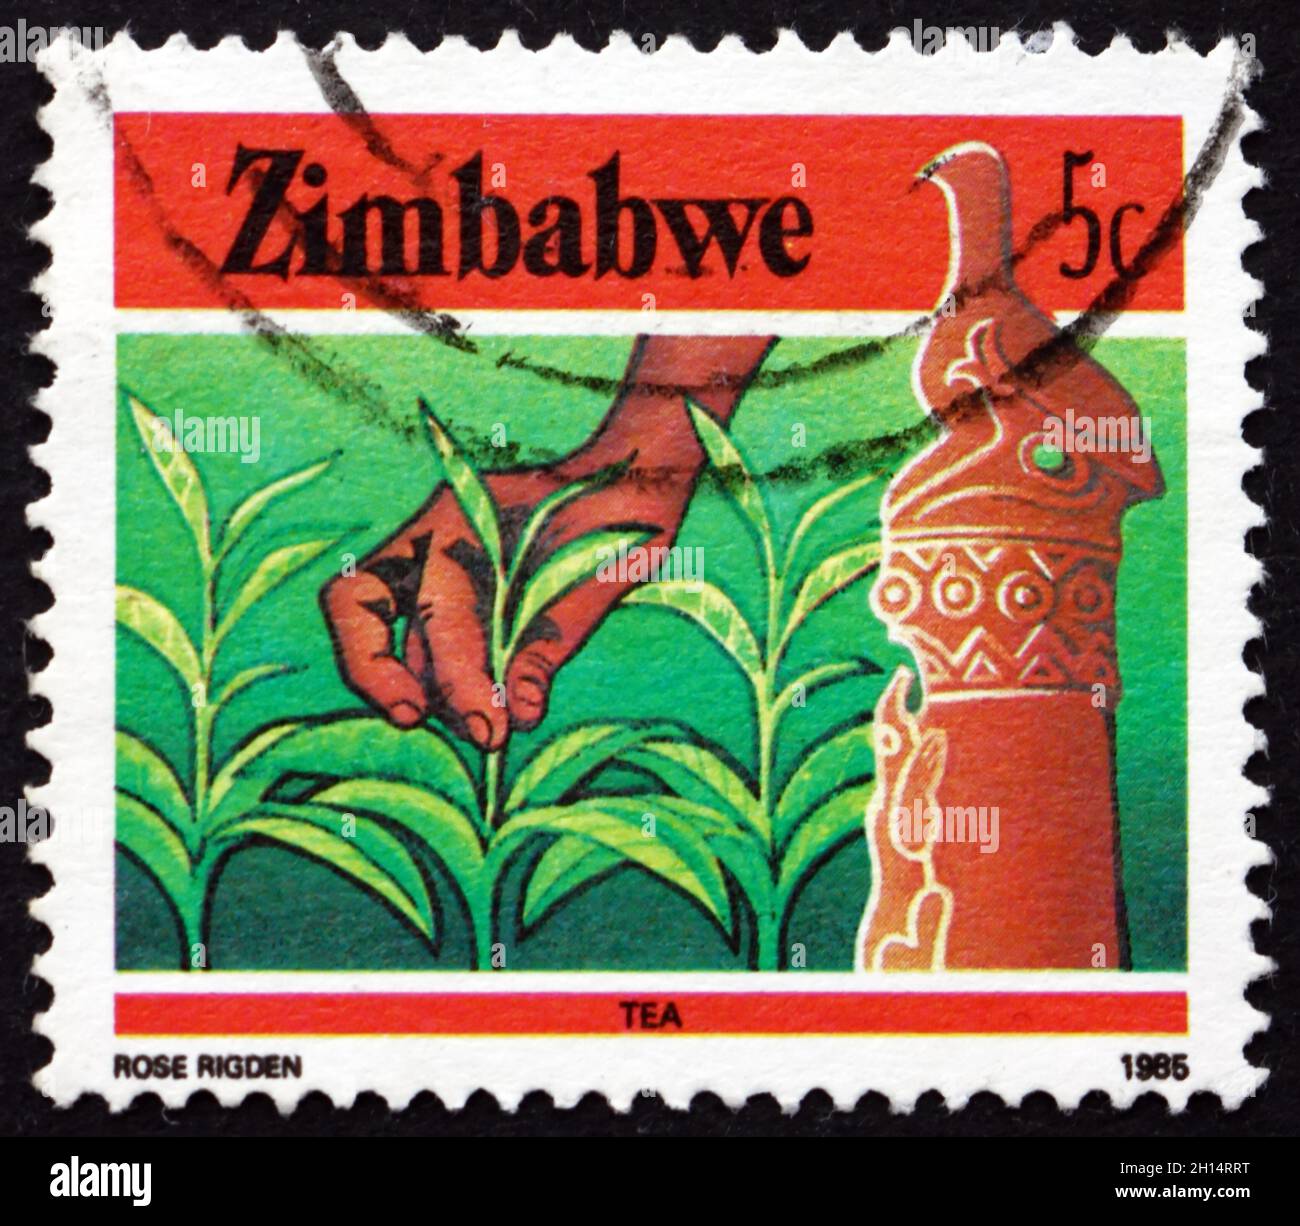 ZIMBABWE - VERS 1985 : un timbre imprimé au Zimbabwe montre l'oiseau et le thé du Zimbabwe, l'agriculture, vers 1985 Banque D'Images